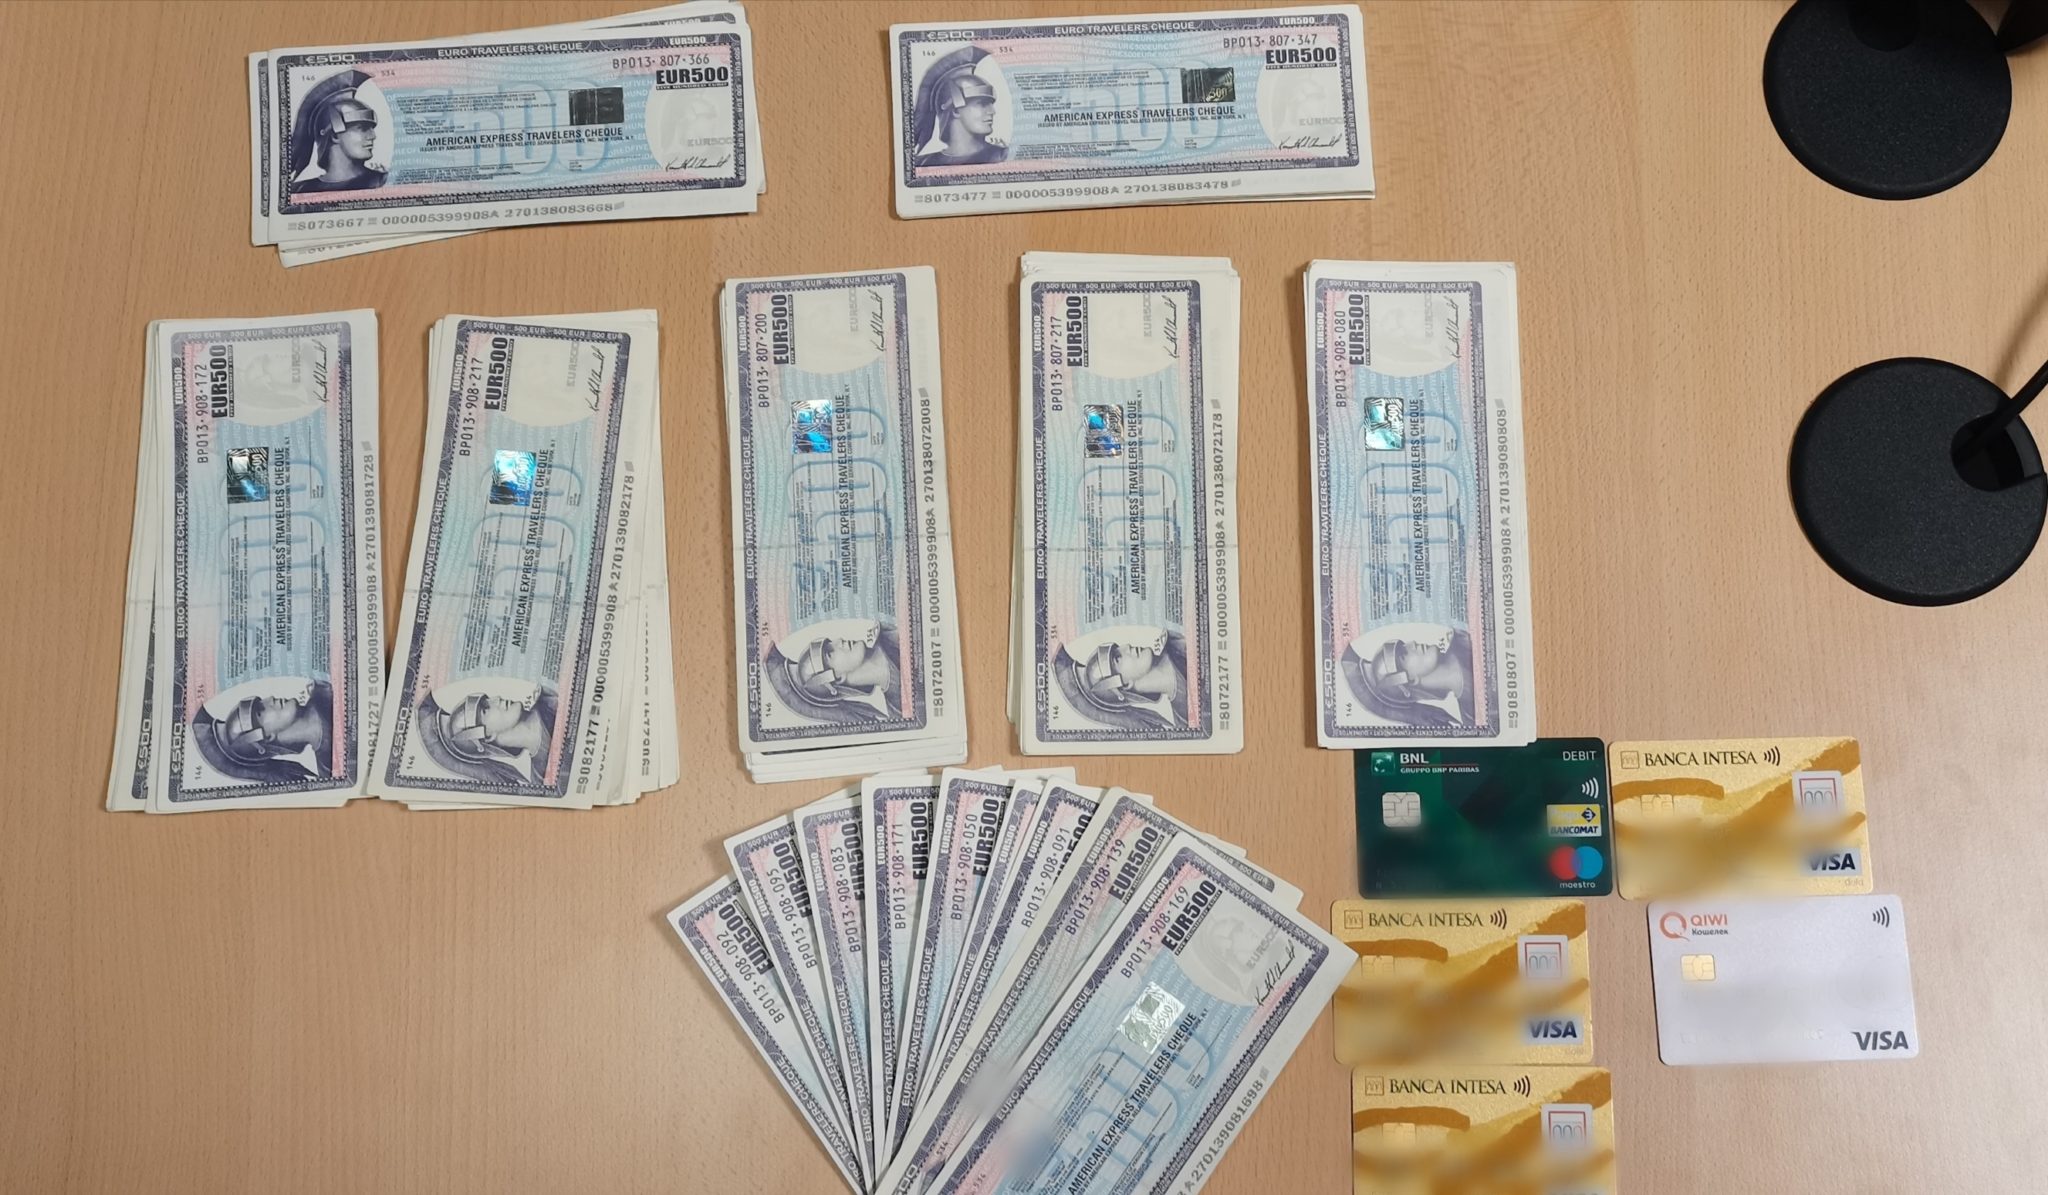 Gefälschte Schecks in Höhe von 69.000 Euro - Festnahme im Düsseldorfer Hauptbahnhof